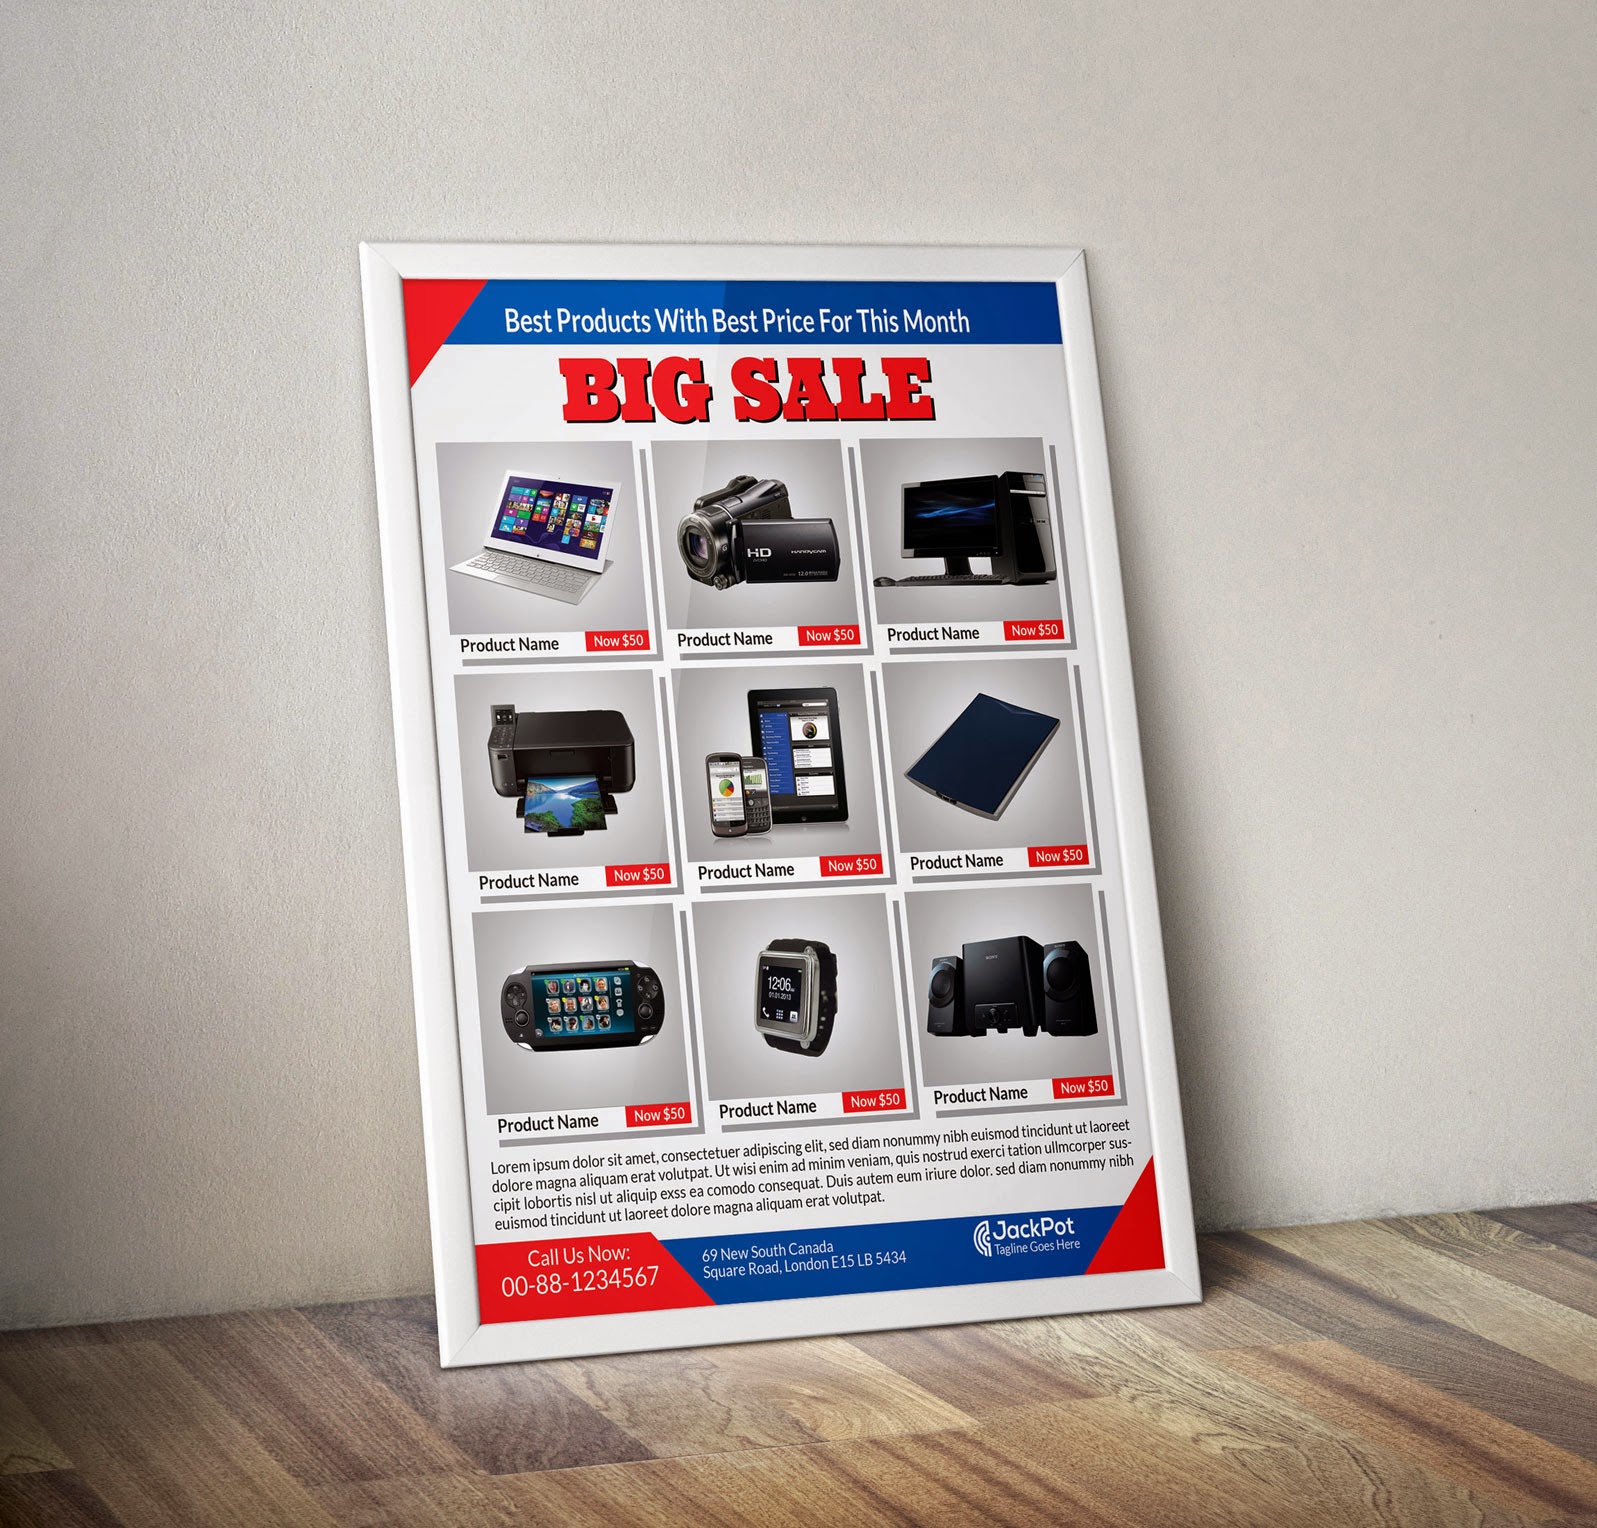 Big Sale Promotion Flyer